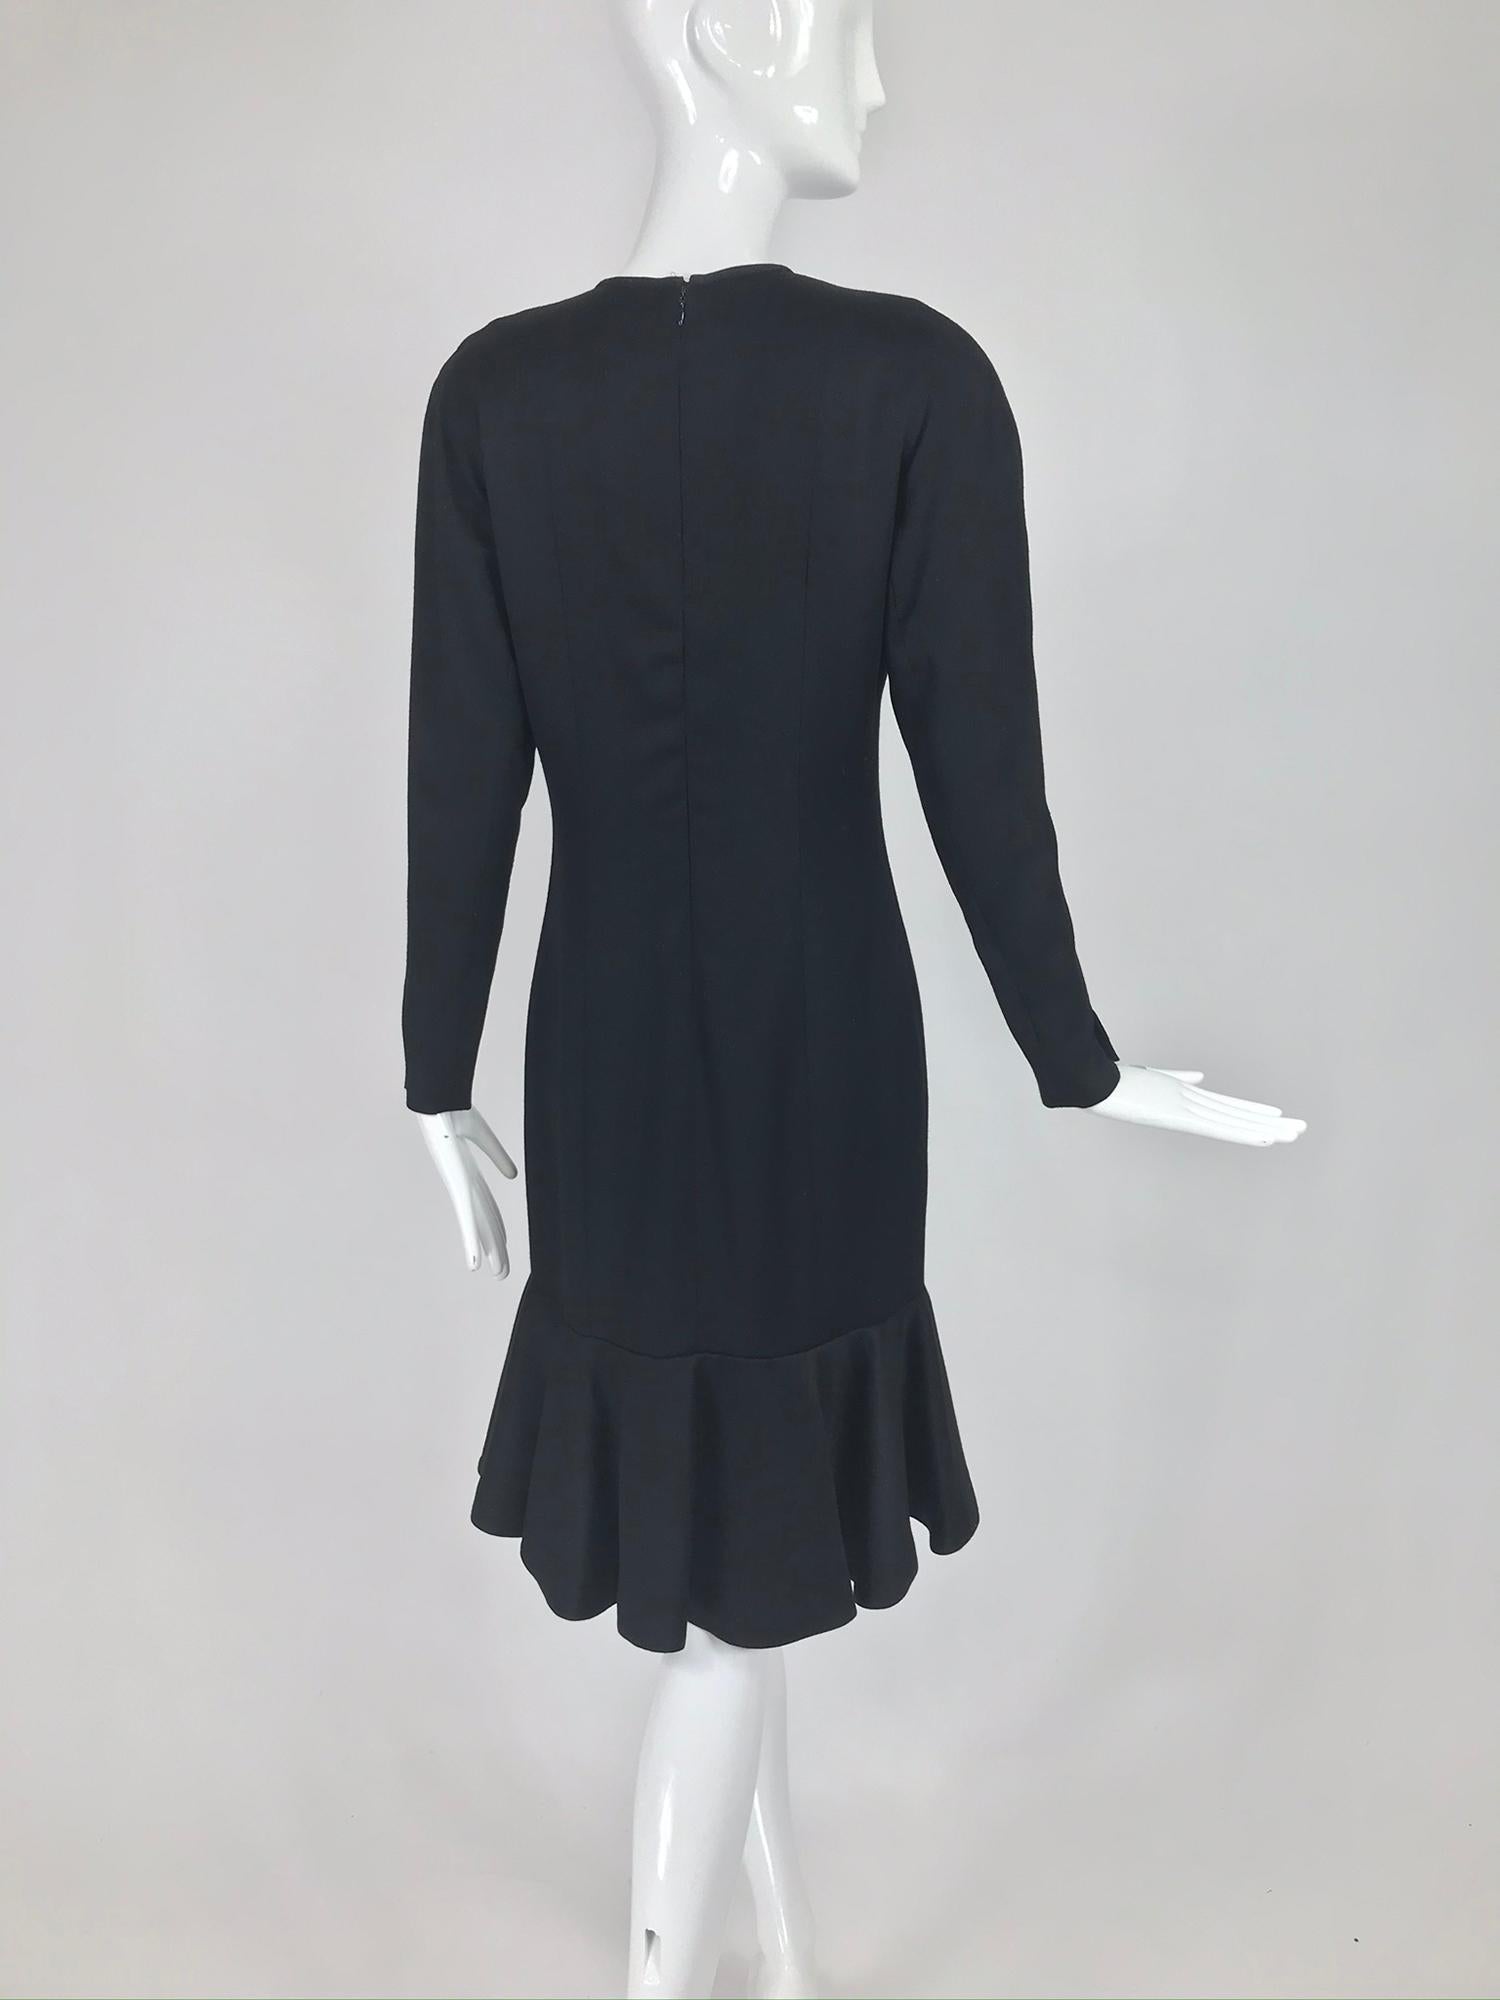 Nina Ricci Black Wool Semi Fitted Dress with Flared Hem 1980s  3